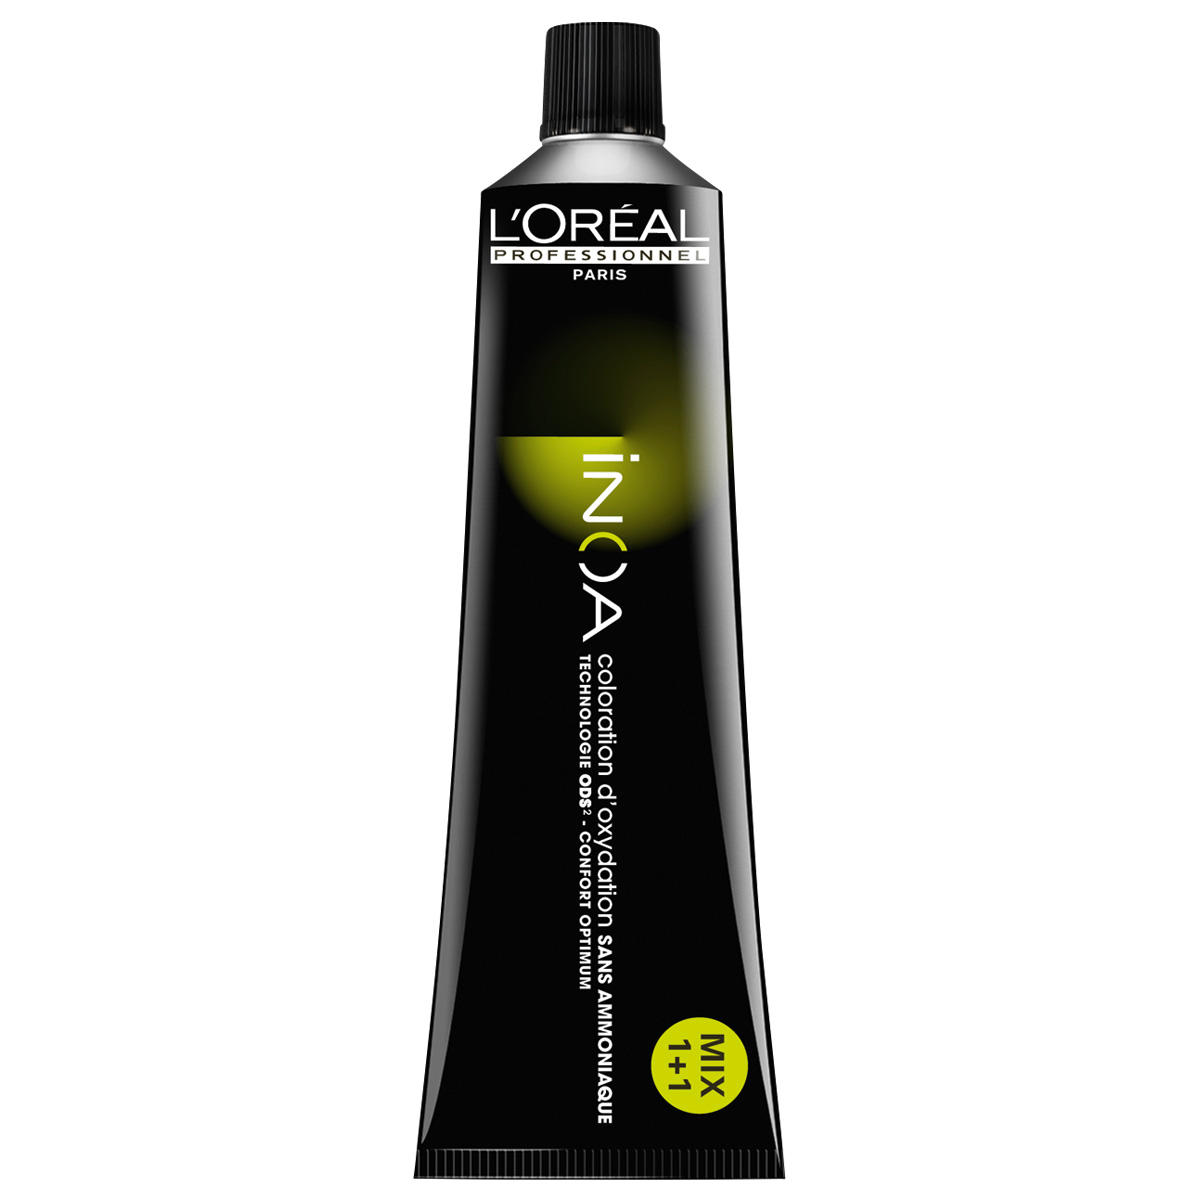 L'Oréal Professionnel Paris Coloration 9 Rubio muy claro, tubo 60 ml